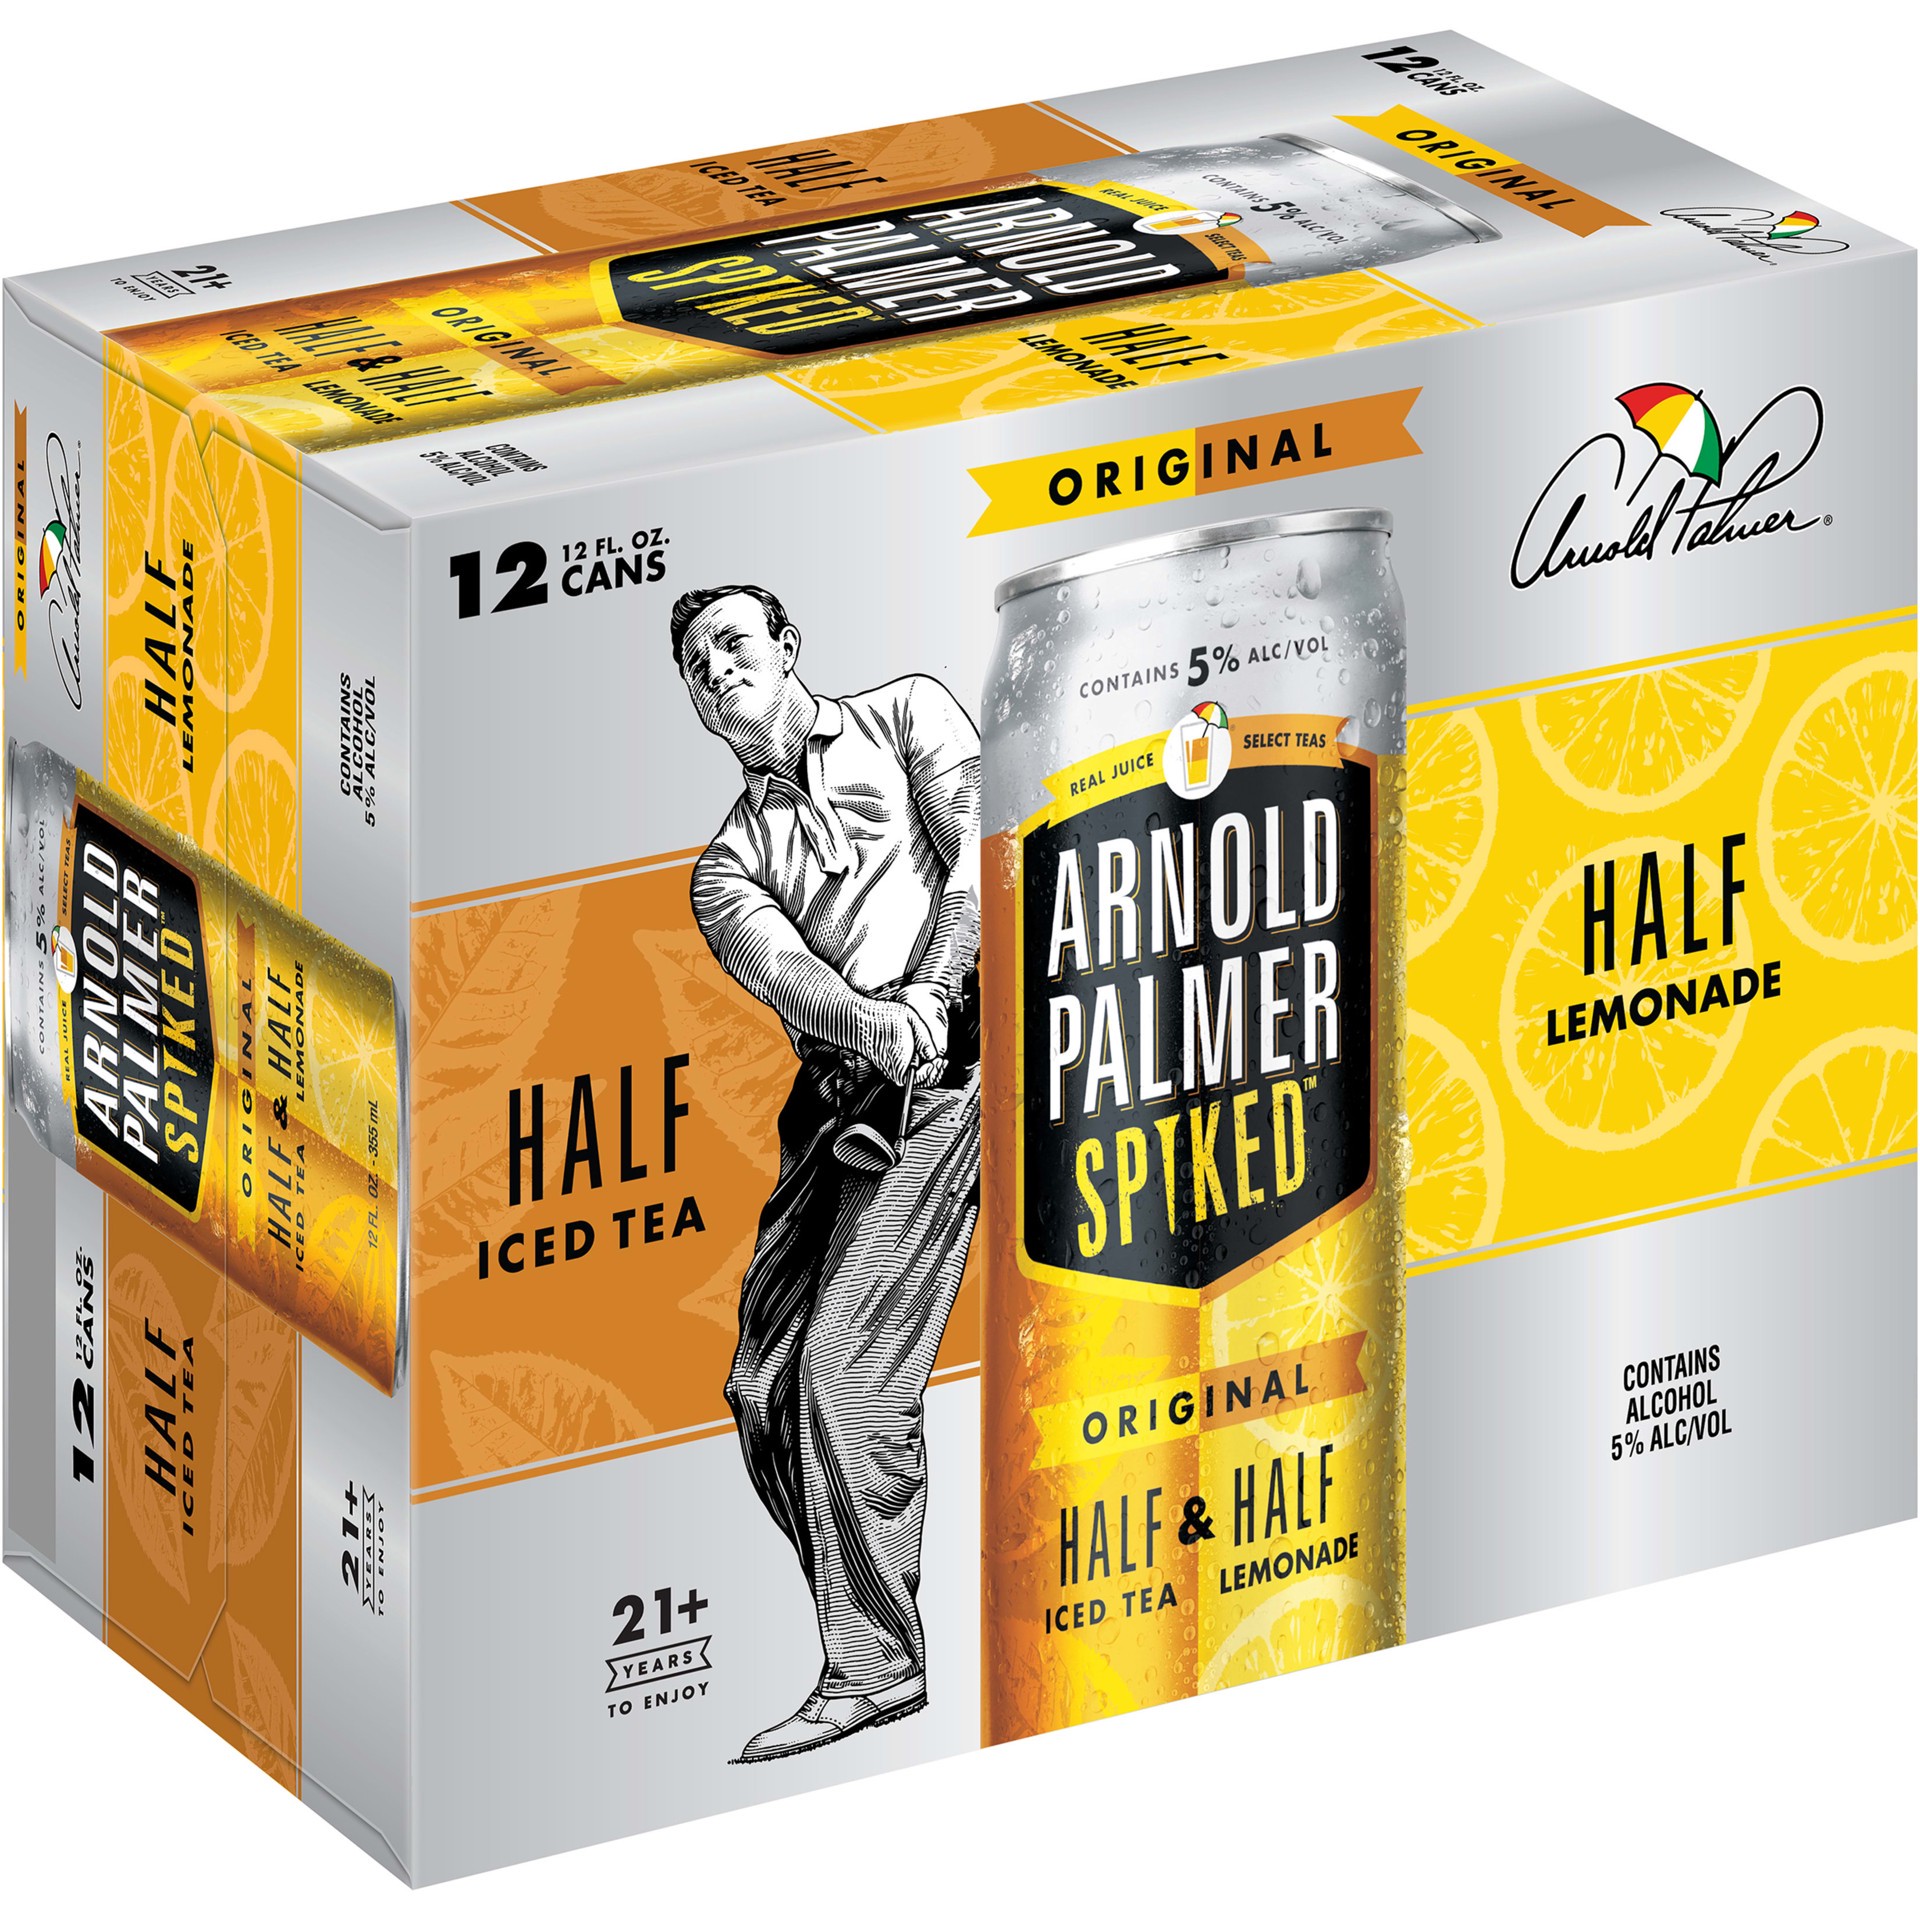 slide 1 of 5, Arnold Palmer Spiked Half & Half Original Arnold Palmer Spiked Original Half & Half Iced Tea Lemonade, 12 Pack, 12 fl oz Cans, 5% ABV, 144 fl oz